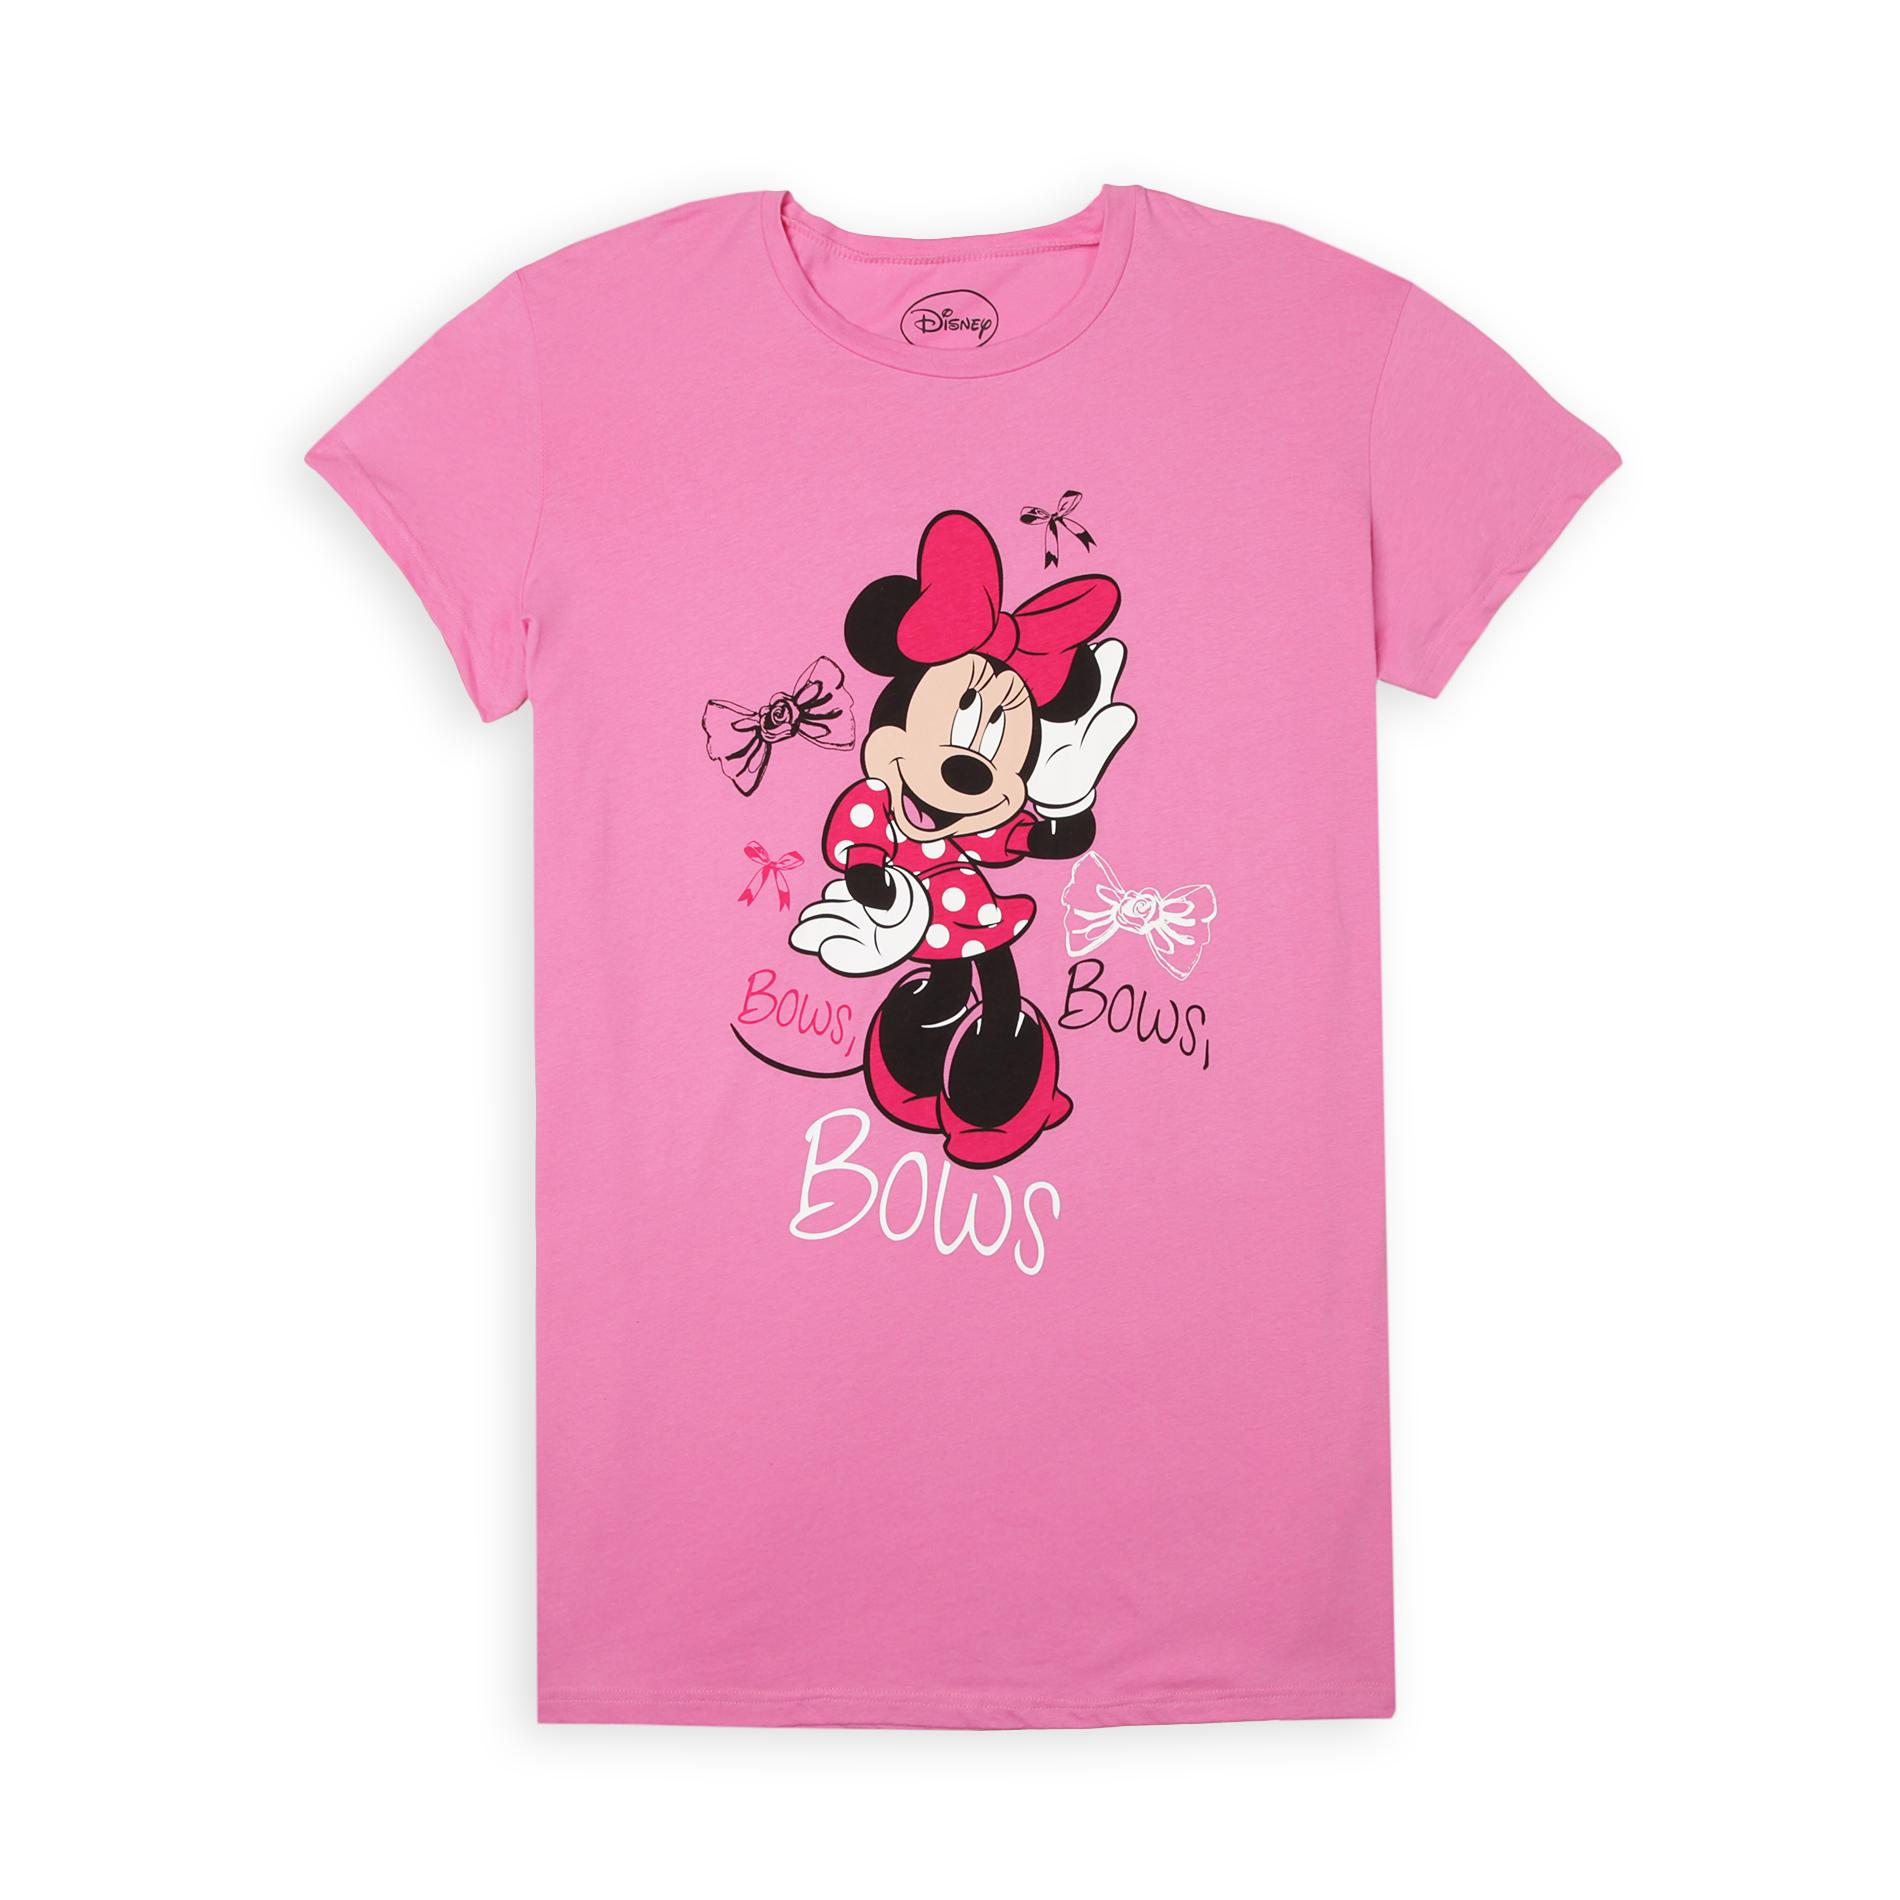 Disney Junior's Plus Dorm Shirt - Minnie Mouse